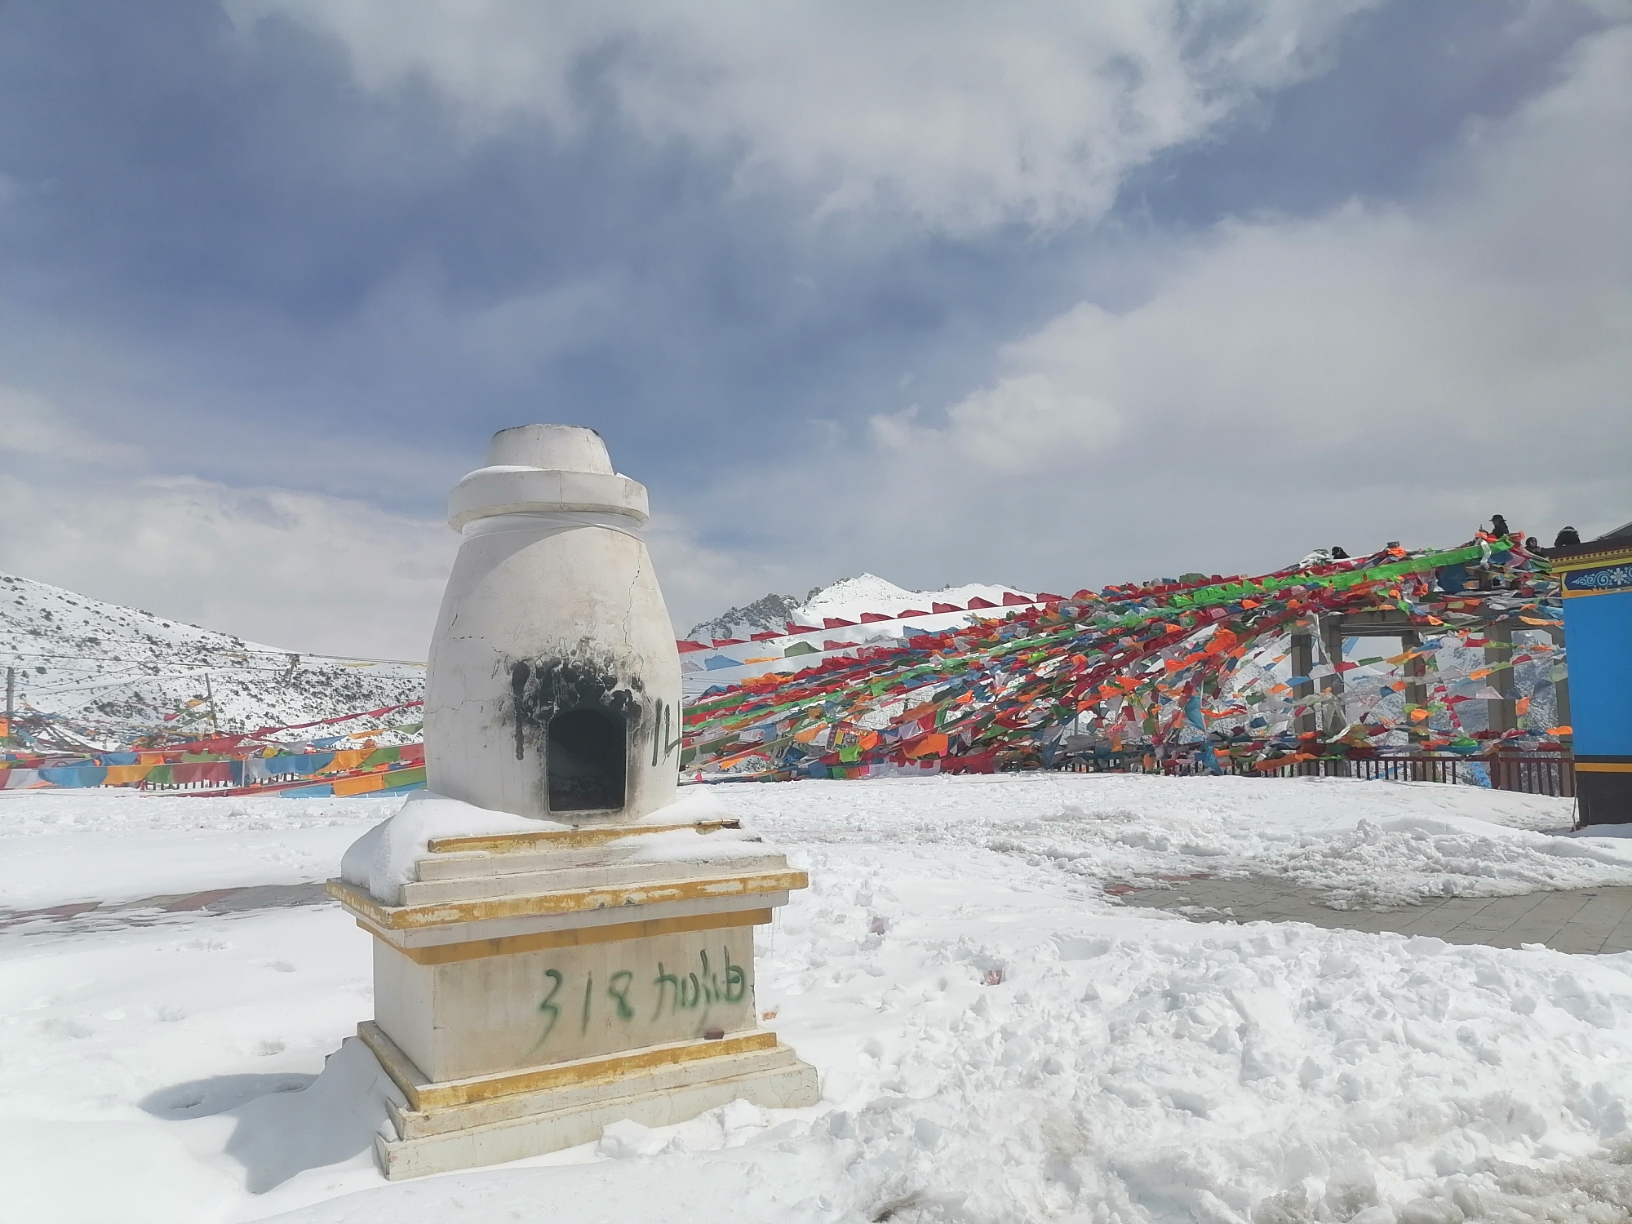 4月10日西藏左贡县一邦达草原一业拉山达板一怒江七十二拐一多拉神山一八宿县。从左贡到邦达草原观景点玉